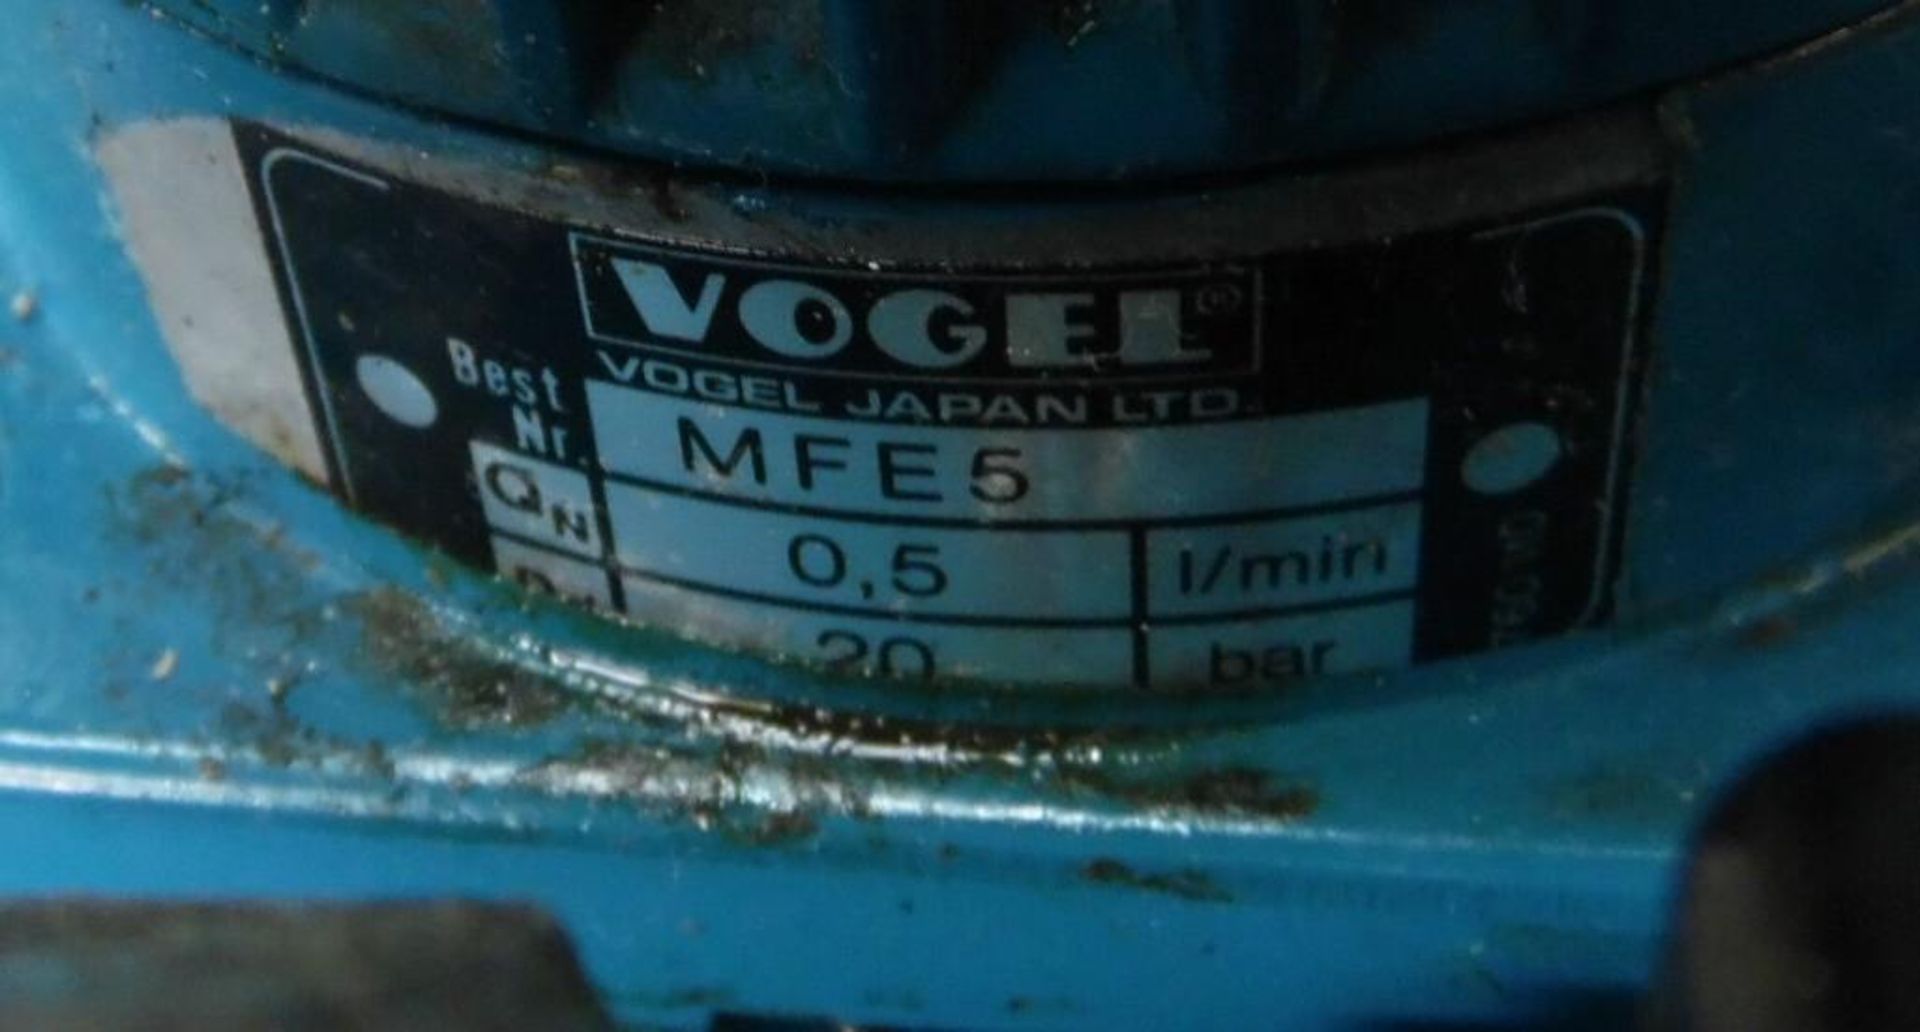 Vogel #MFE5/BW6 Automatic Lubricator, 220V - Image 3 of 4